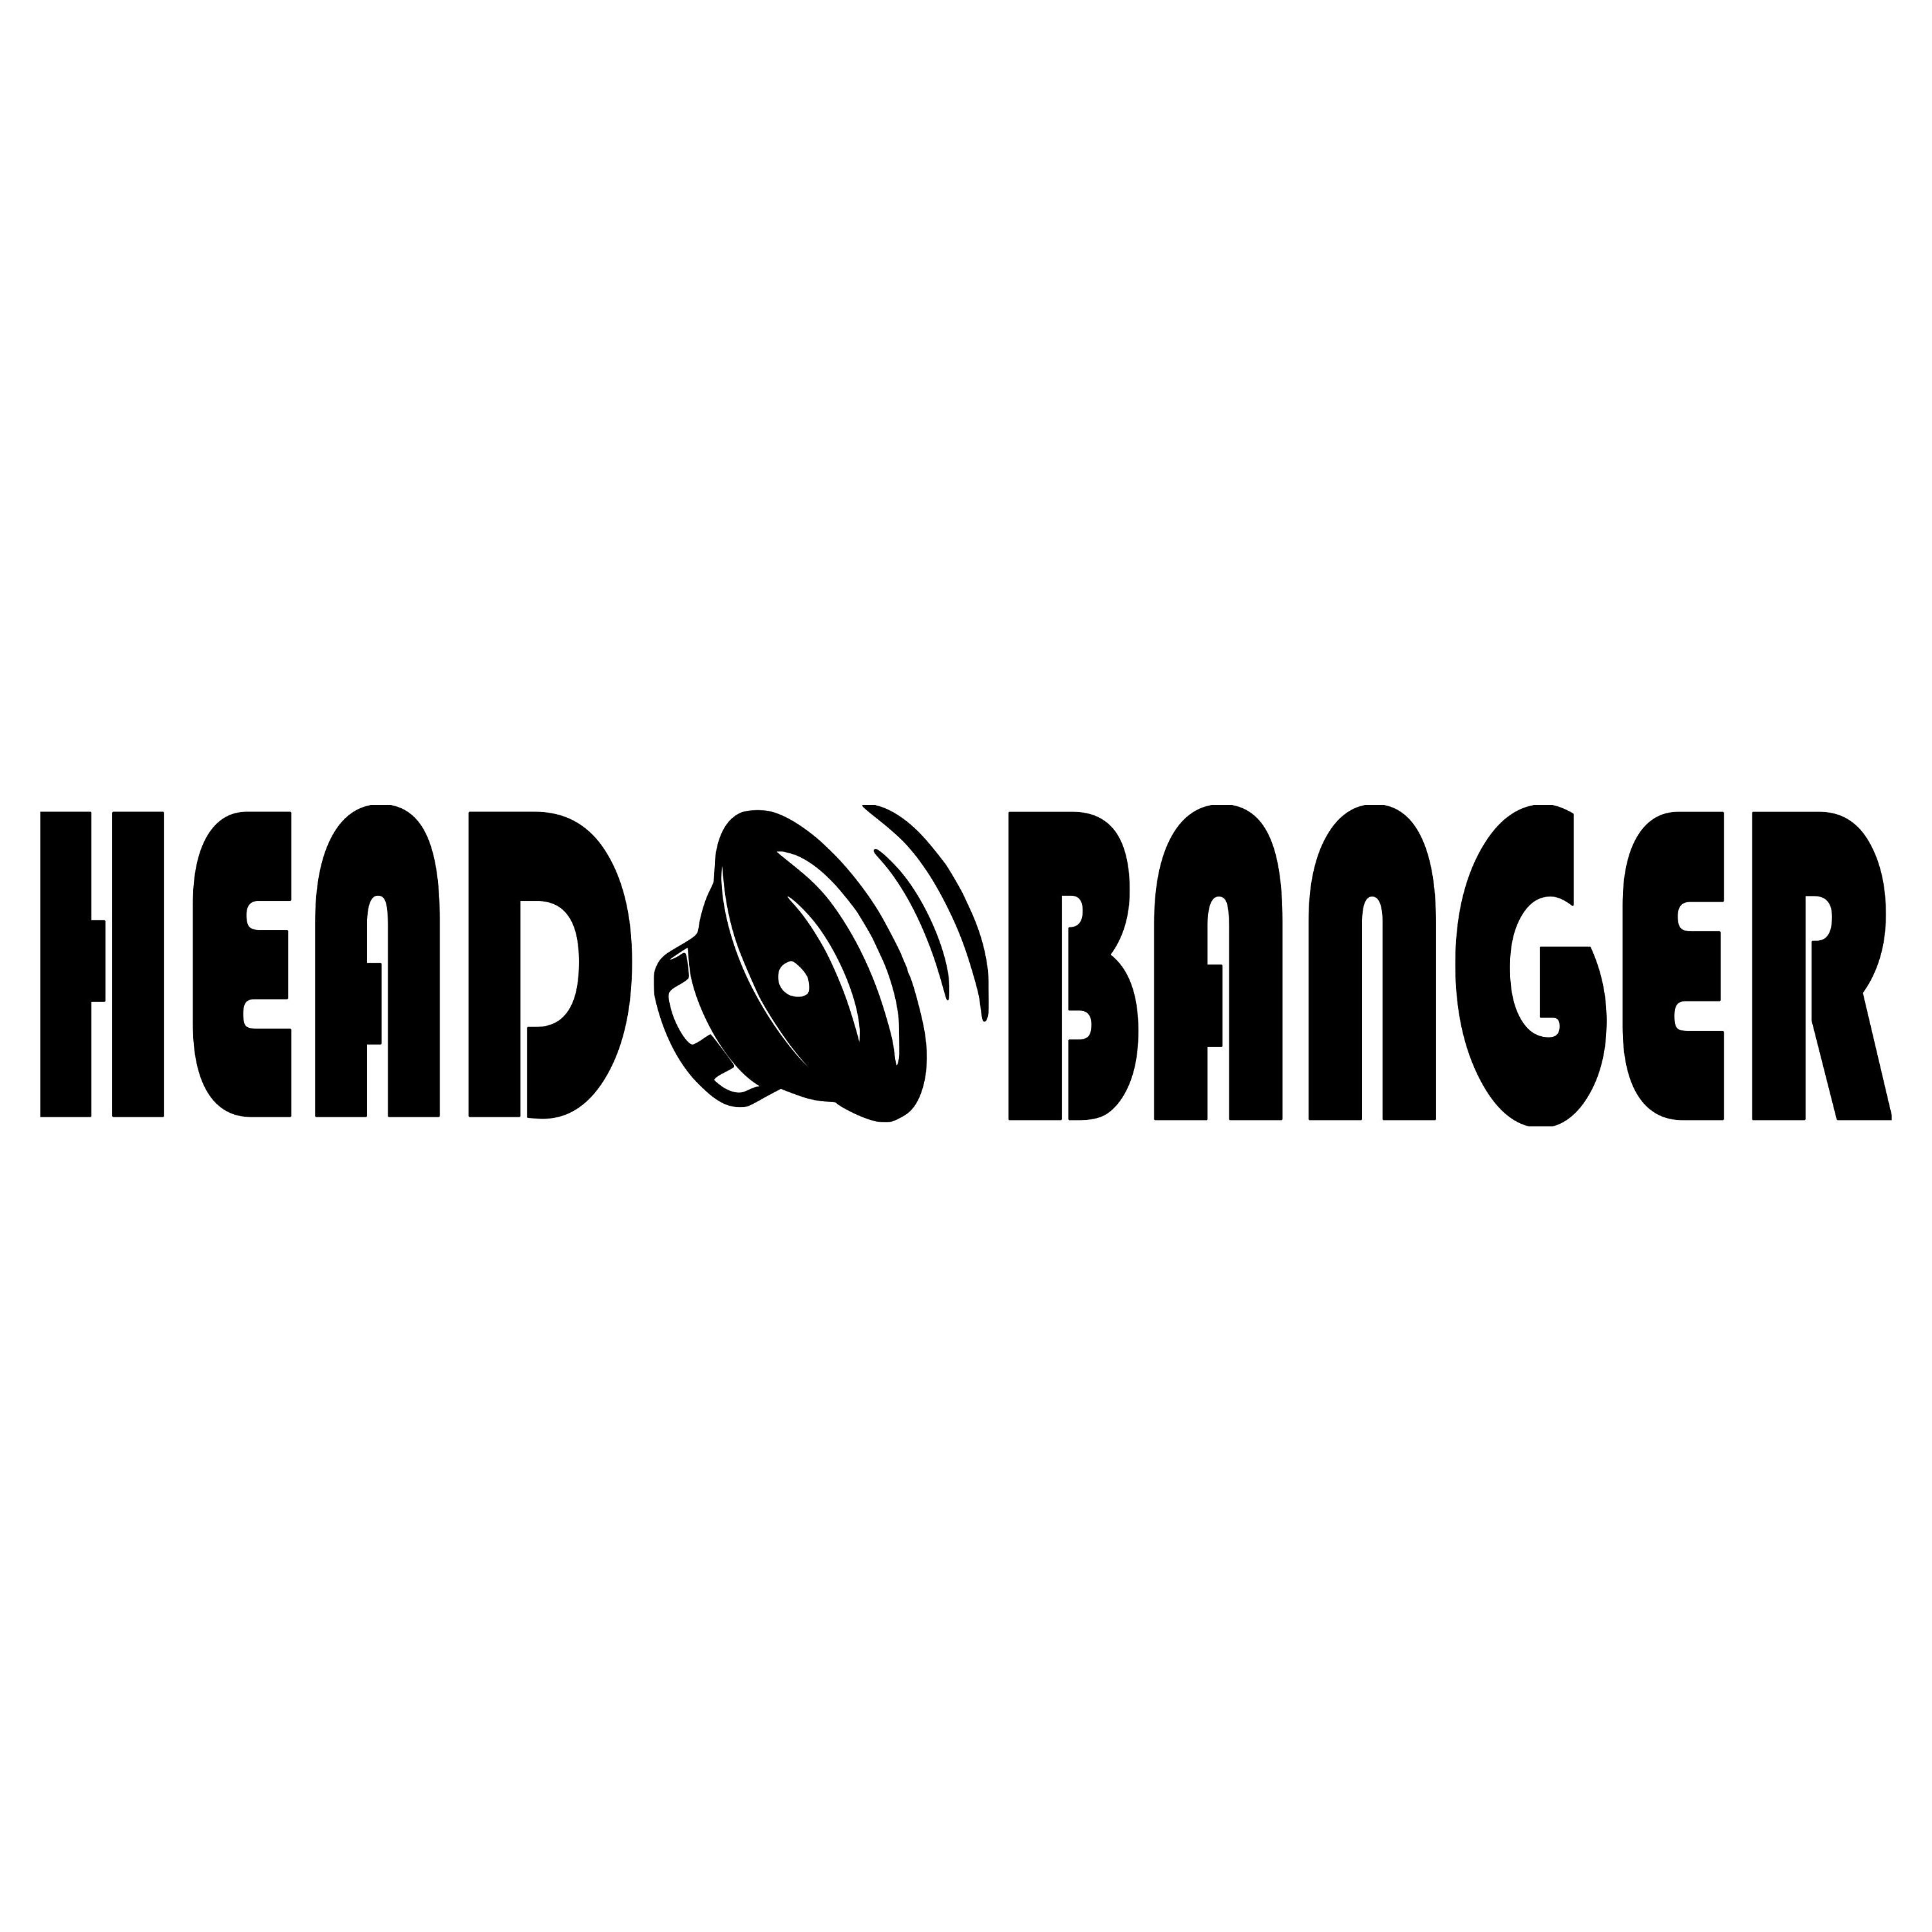 Buy Headbanger V1 Vinyl Decal Sticker EDM Music Speaker Basshead Head Banger  Online in India 